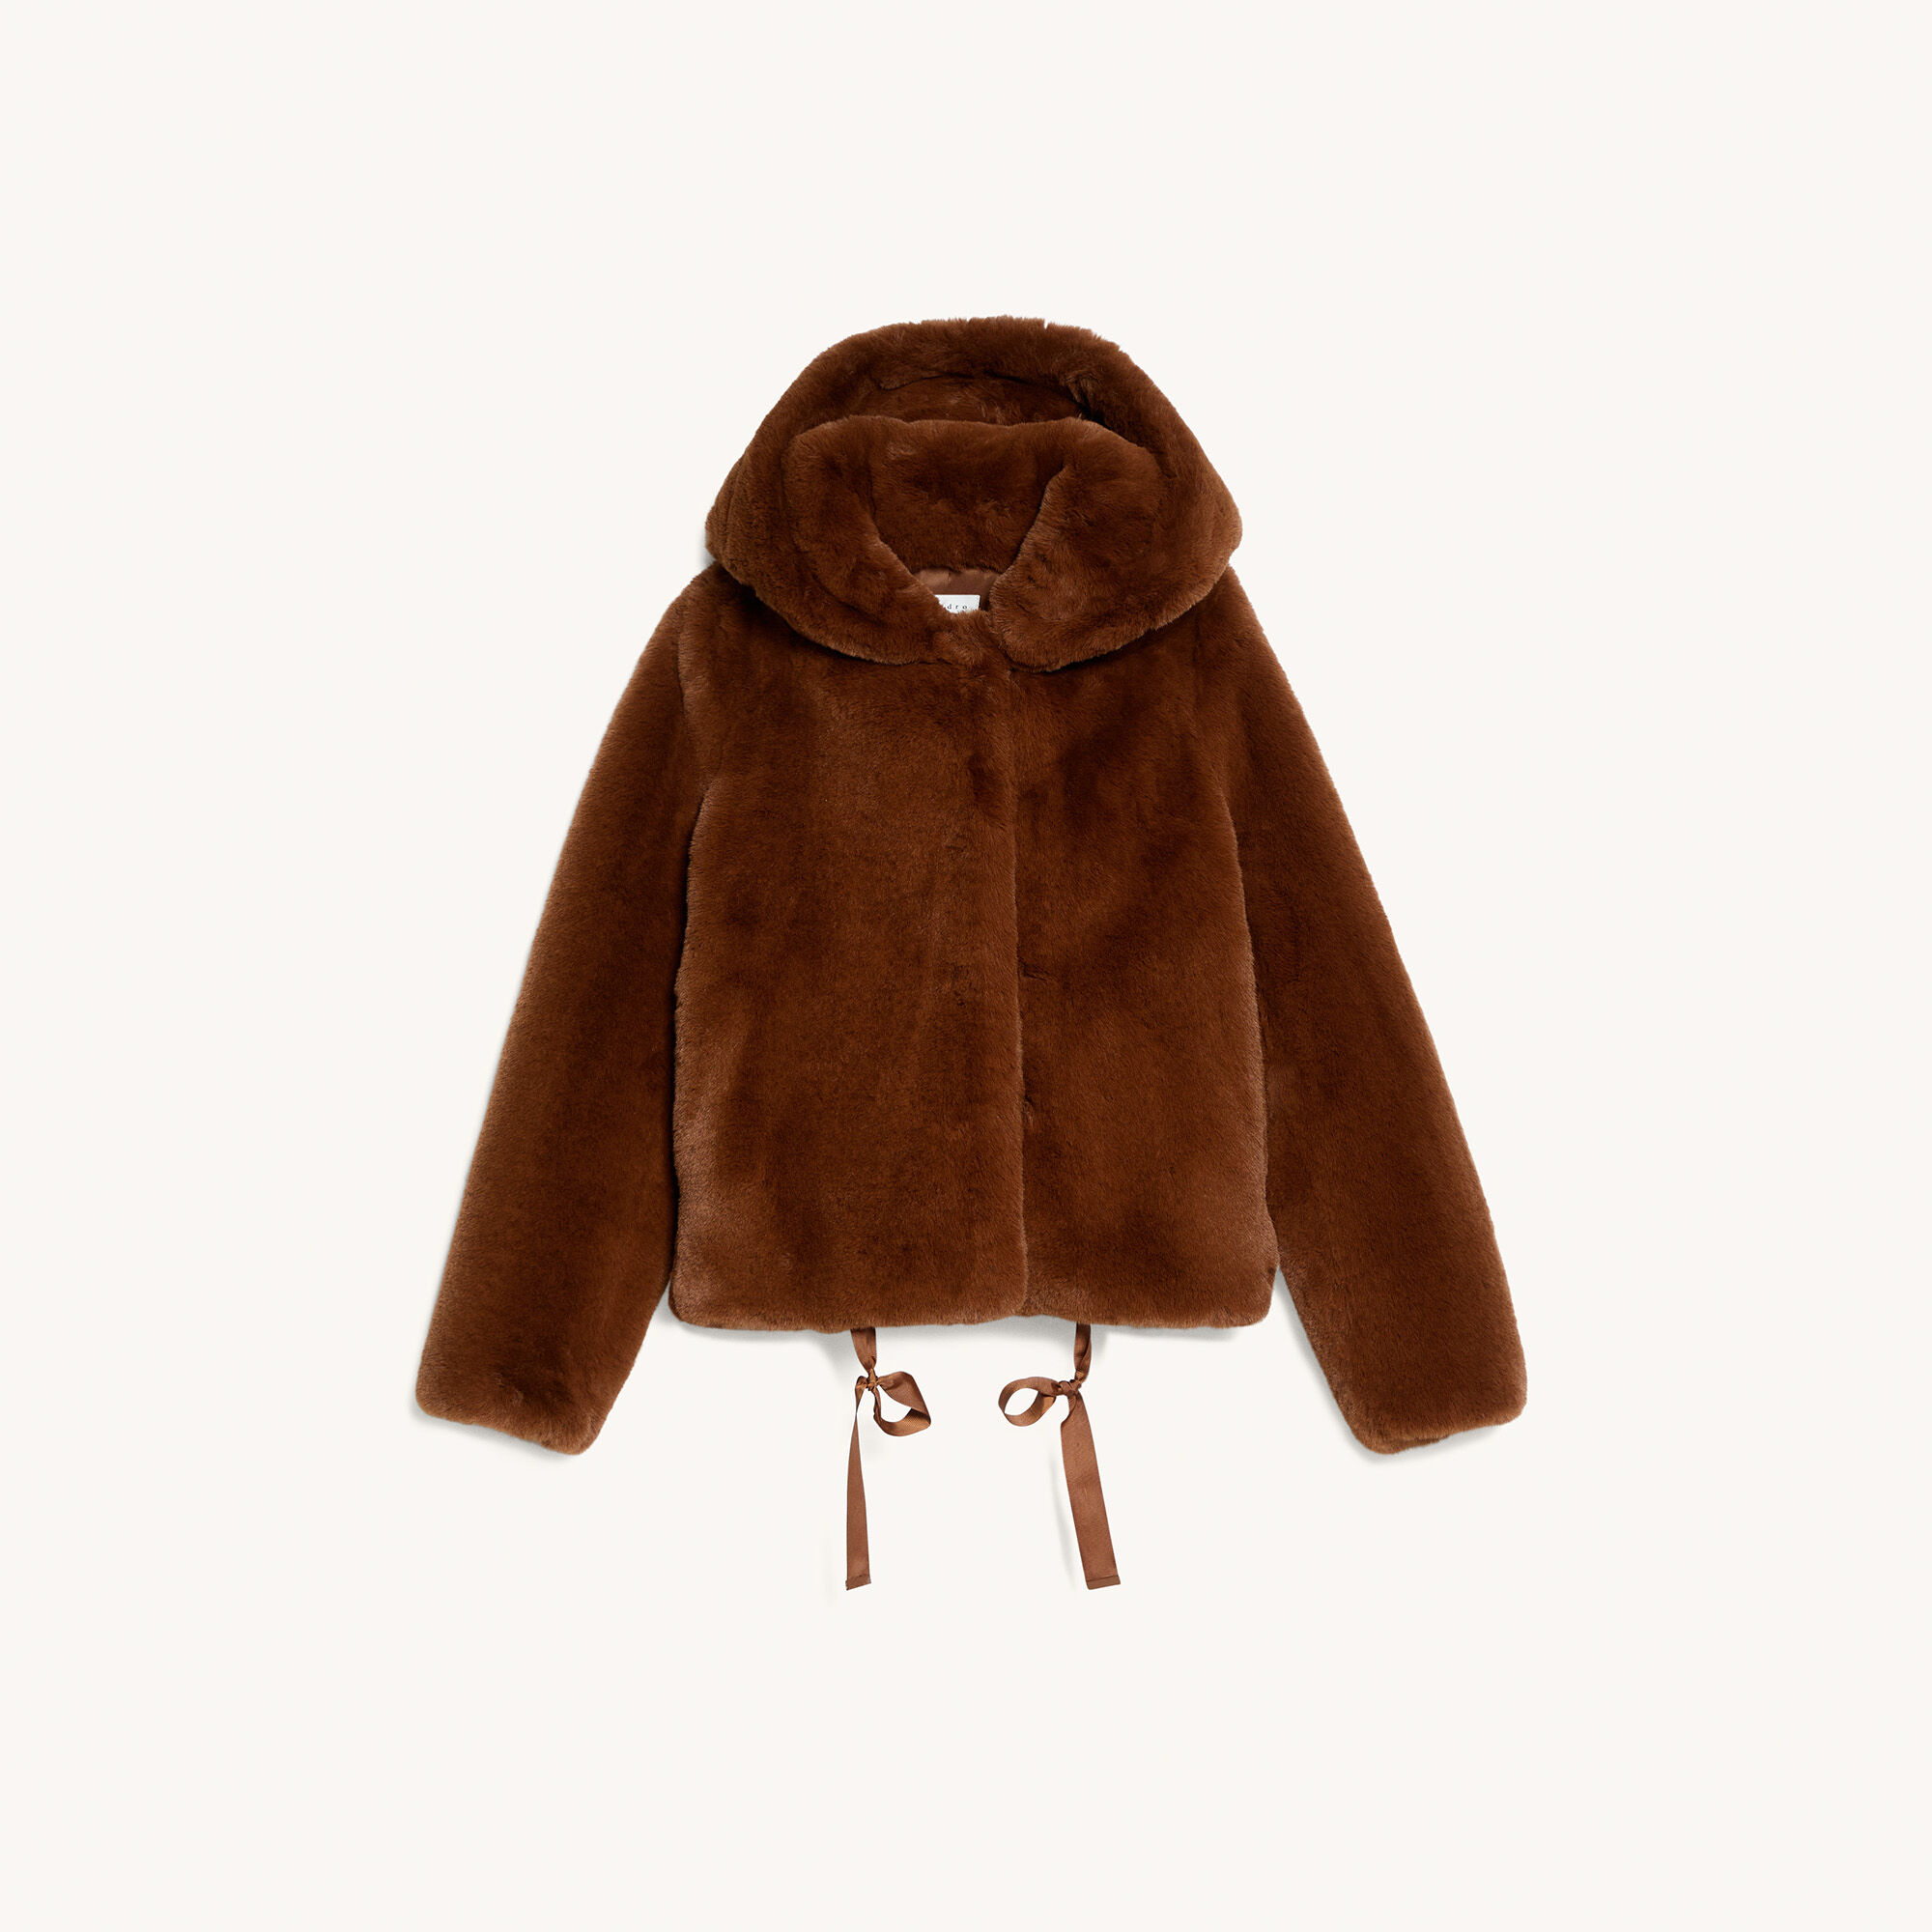 short brown faux fur jacket